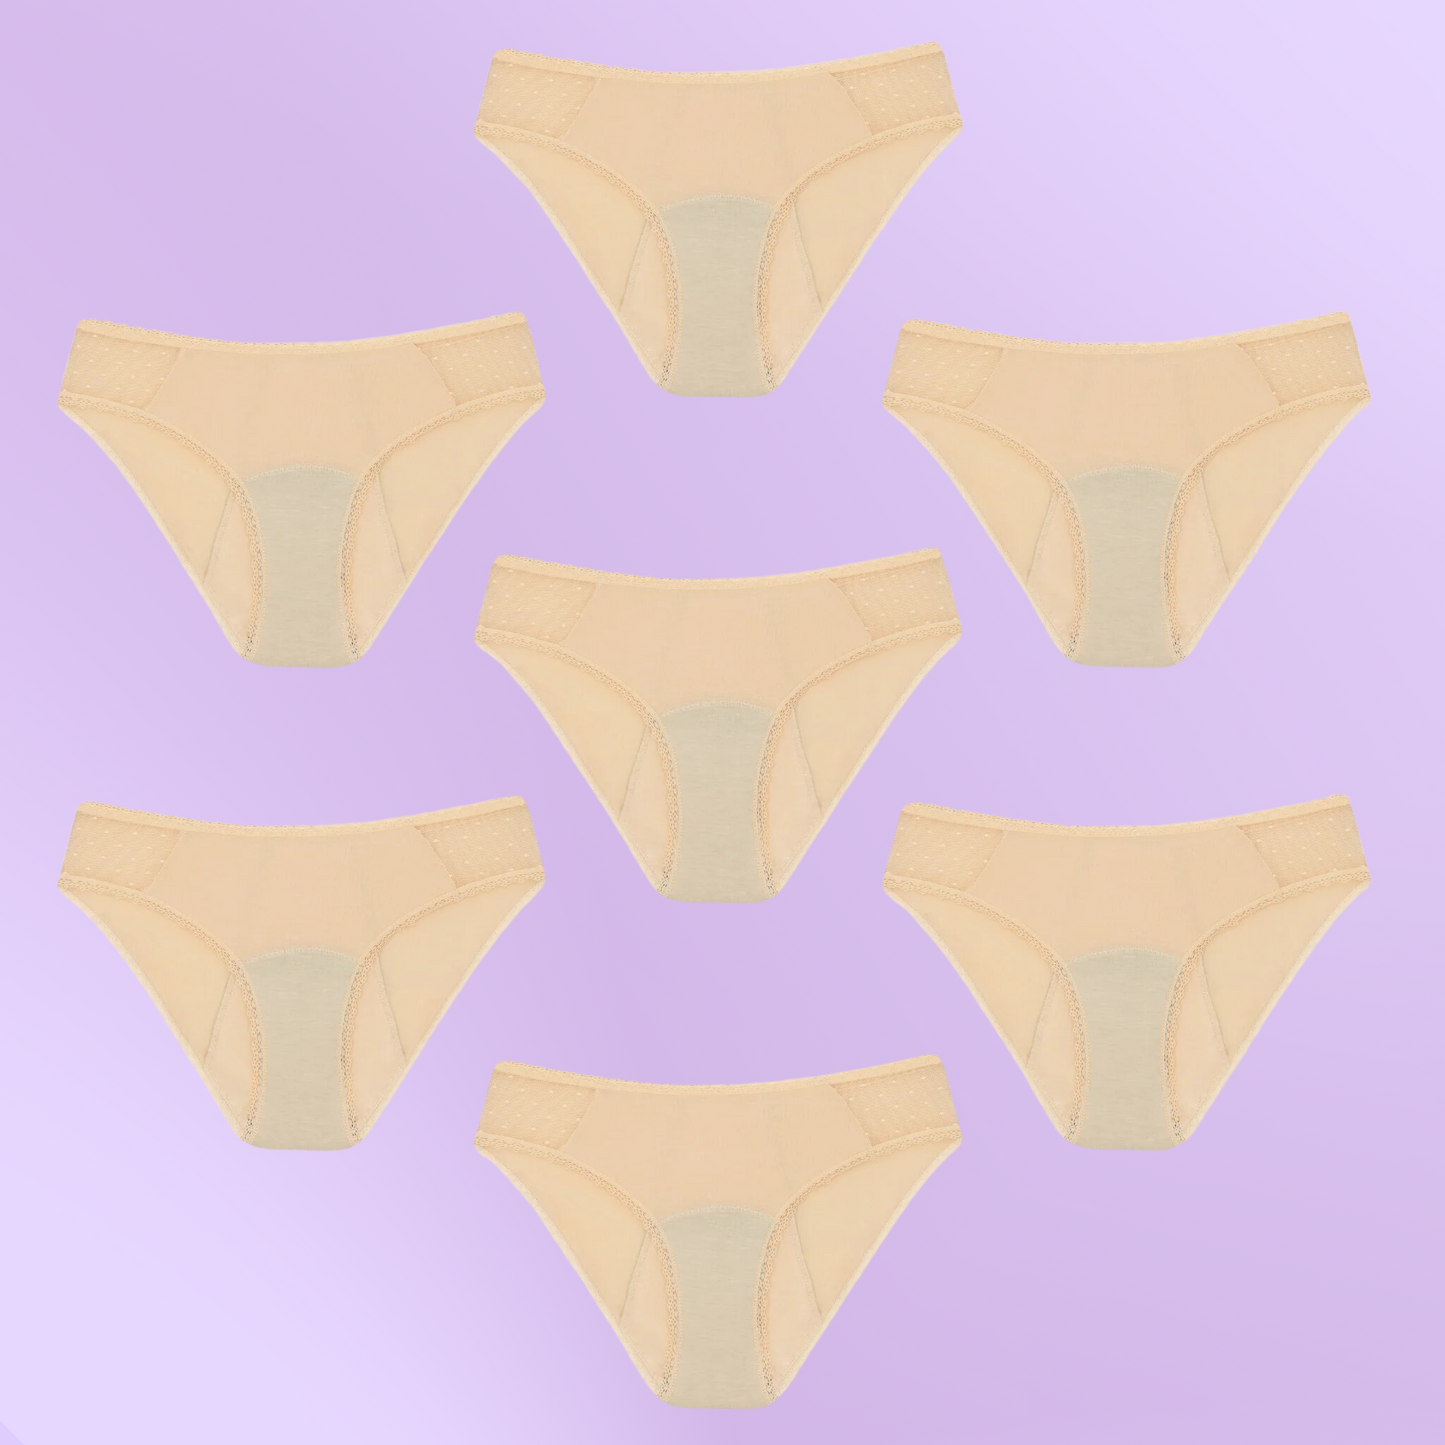 Period Underwear for teens | Transparent hips | Beige